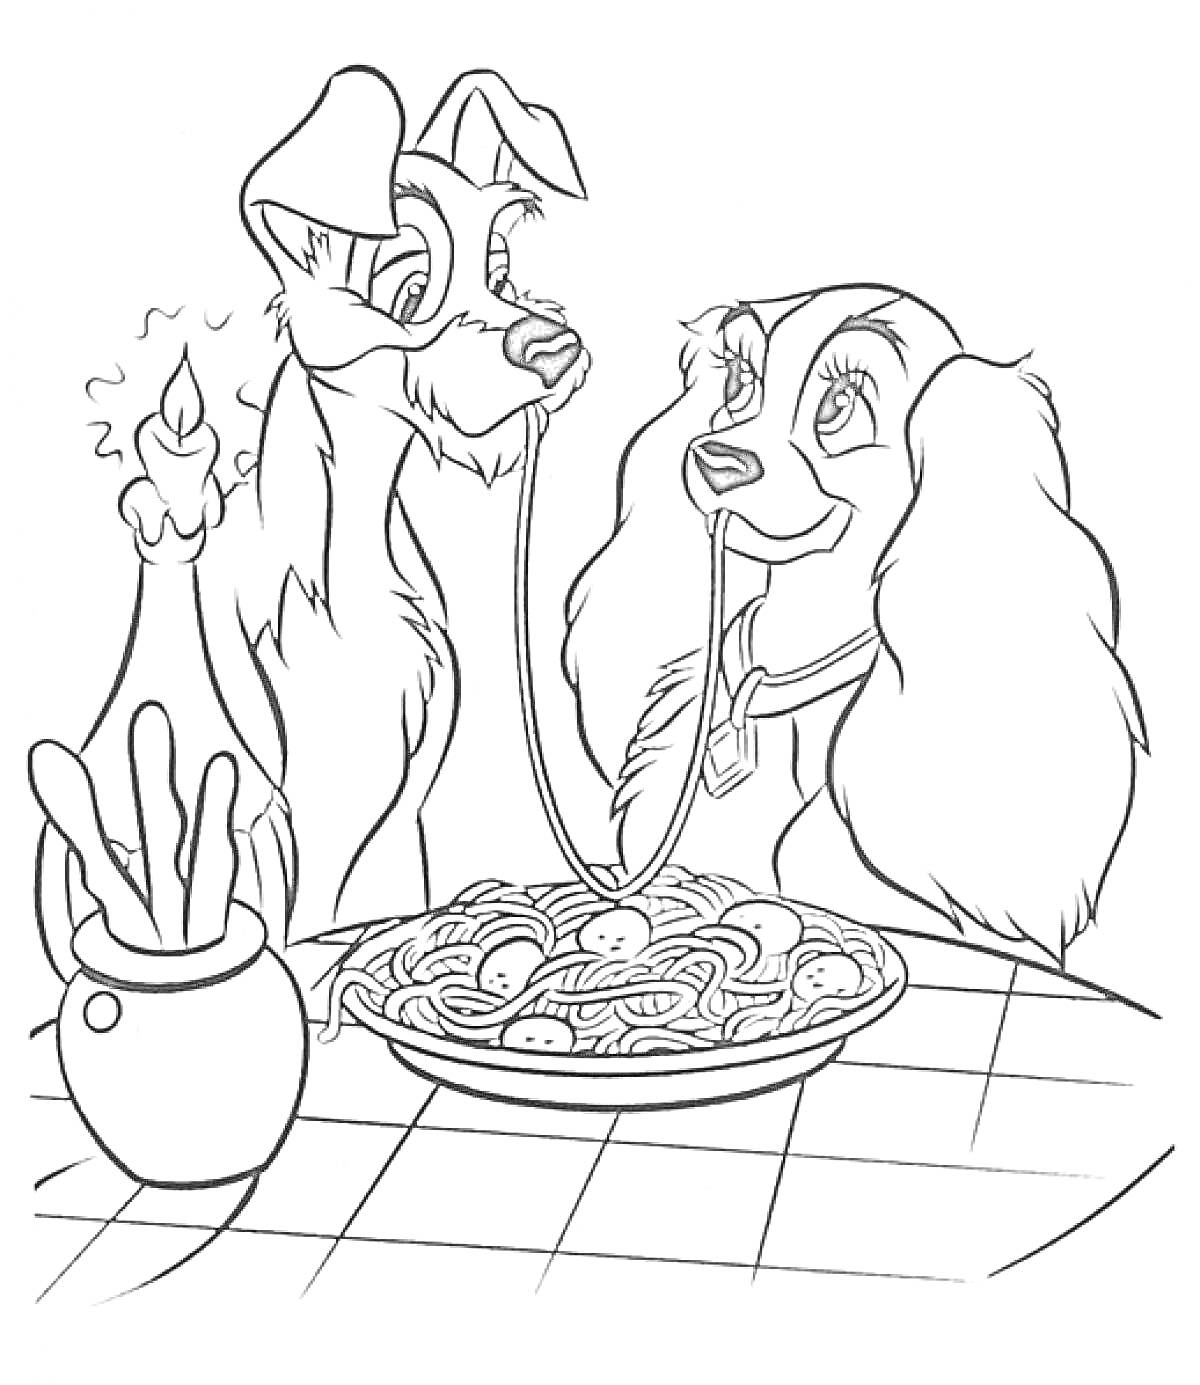 Раскраска Два пса за столом с миской спагетти, свеча, ваза с хлебными палочками